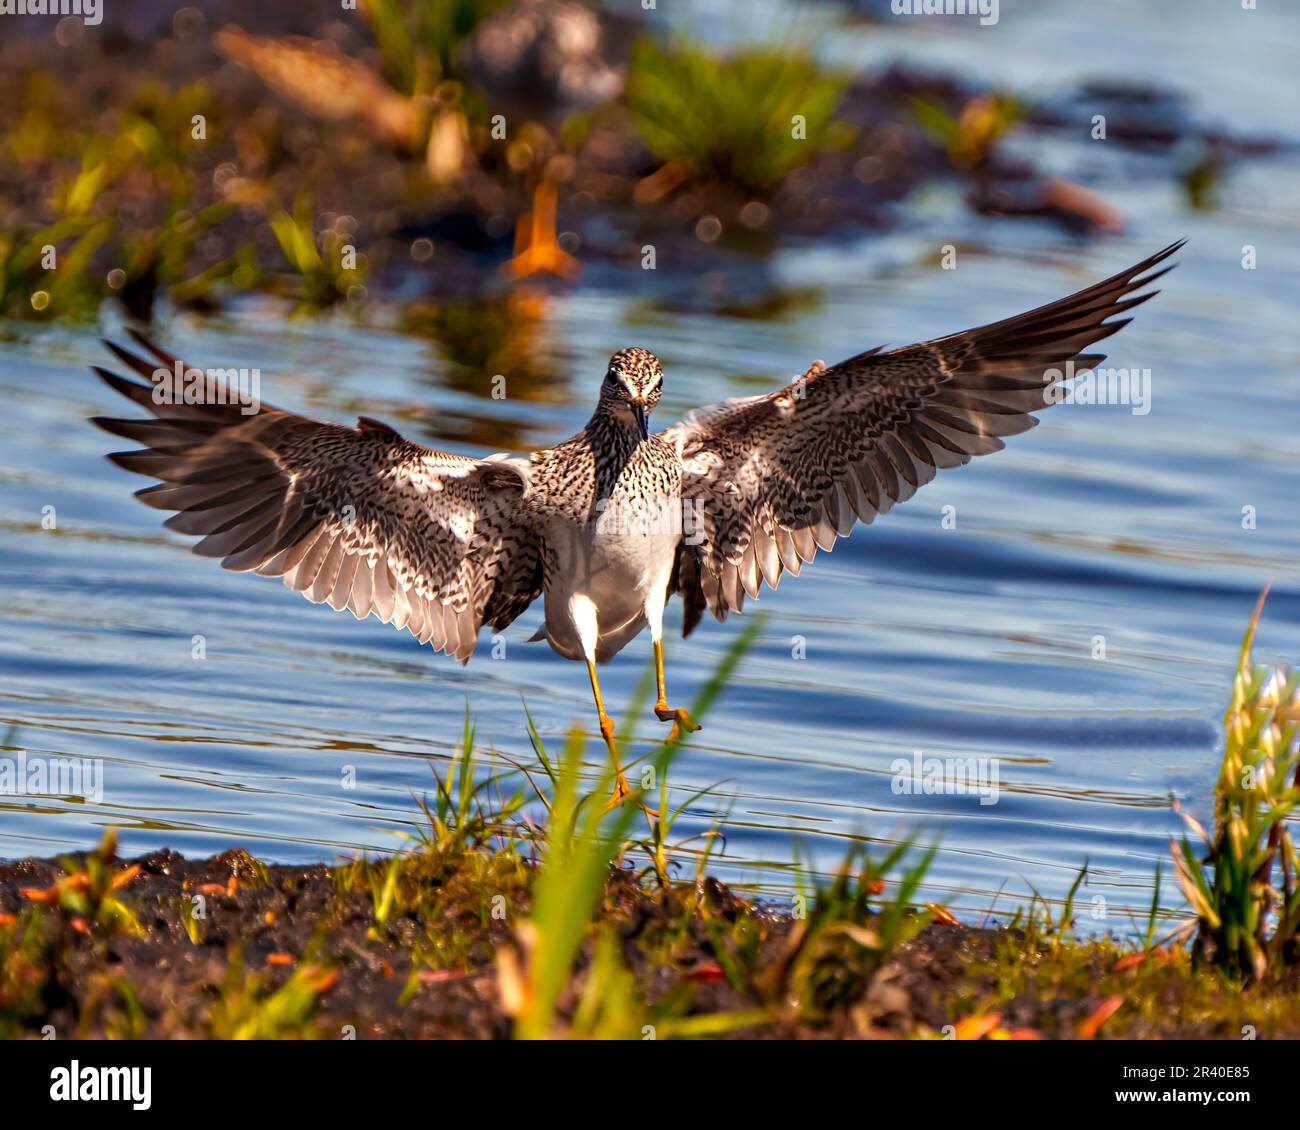 Gewöhnlicher Sandpiper fliegt und landet aus nächster Nähe mit gespreizten Flügeln in seiner Umgebung und seinem Lebensraum mit Wasserhintergrund. Sandpiper-Bild. Stockfoto